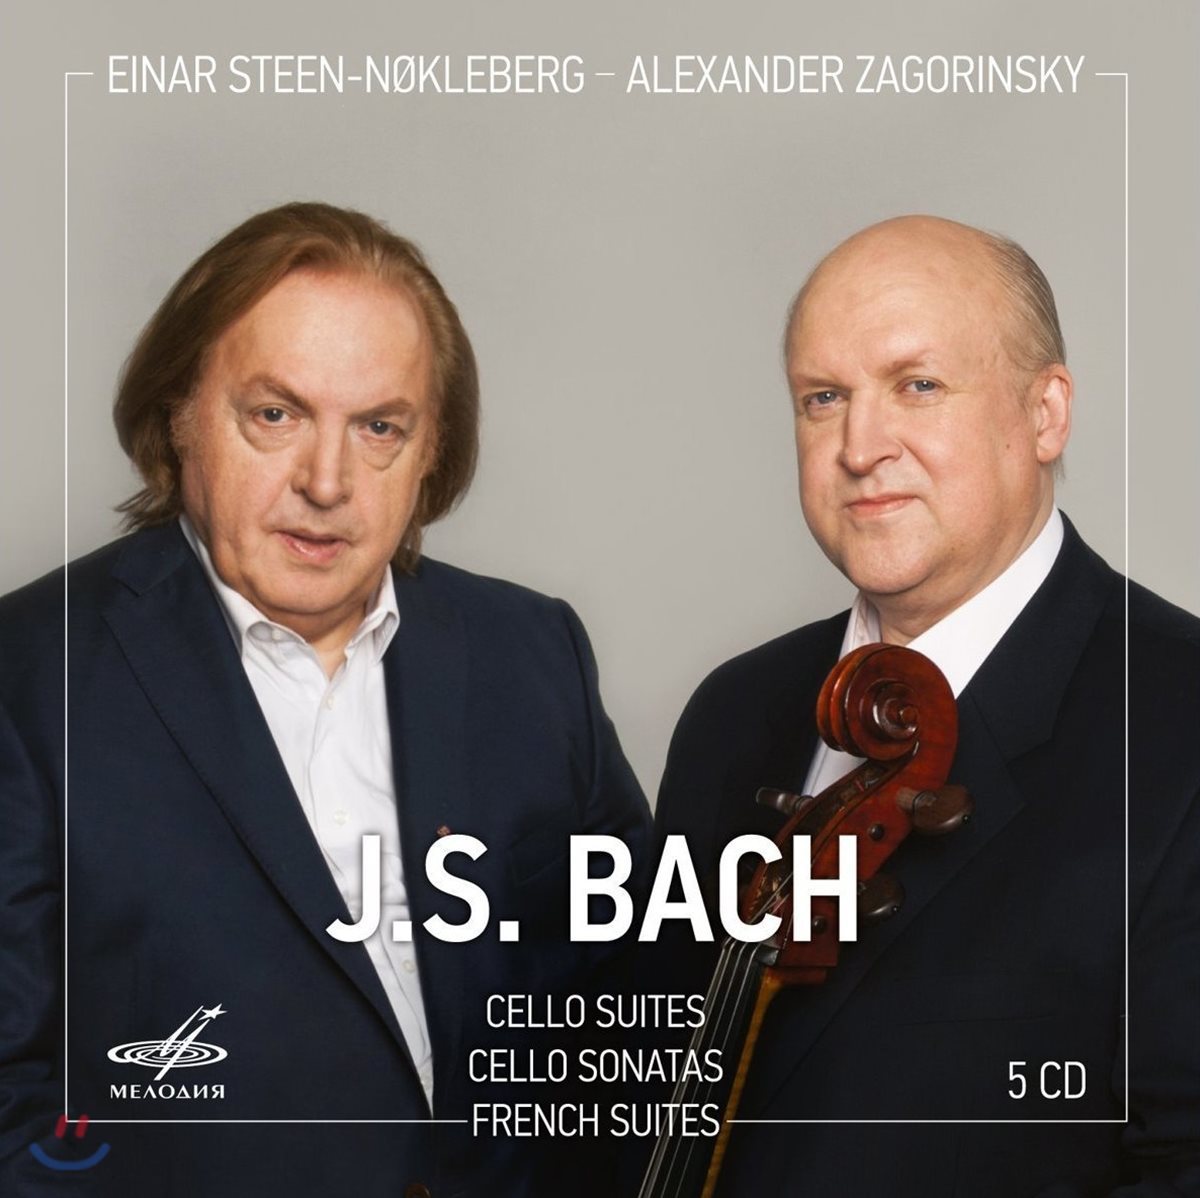 Alexander Zagorinsky 바흐: 무반주 첼로 모음곡, 첼로 소나타, 프랑스 모음곡 - 알렉산더 자고린스키 (J.S. Bach: Cello Suites BWV1007-1012, Sonata BWV1027-1029, French Suite BWV812-817)